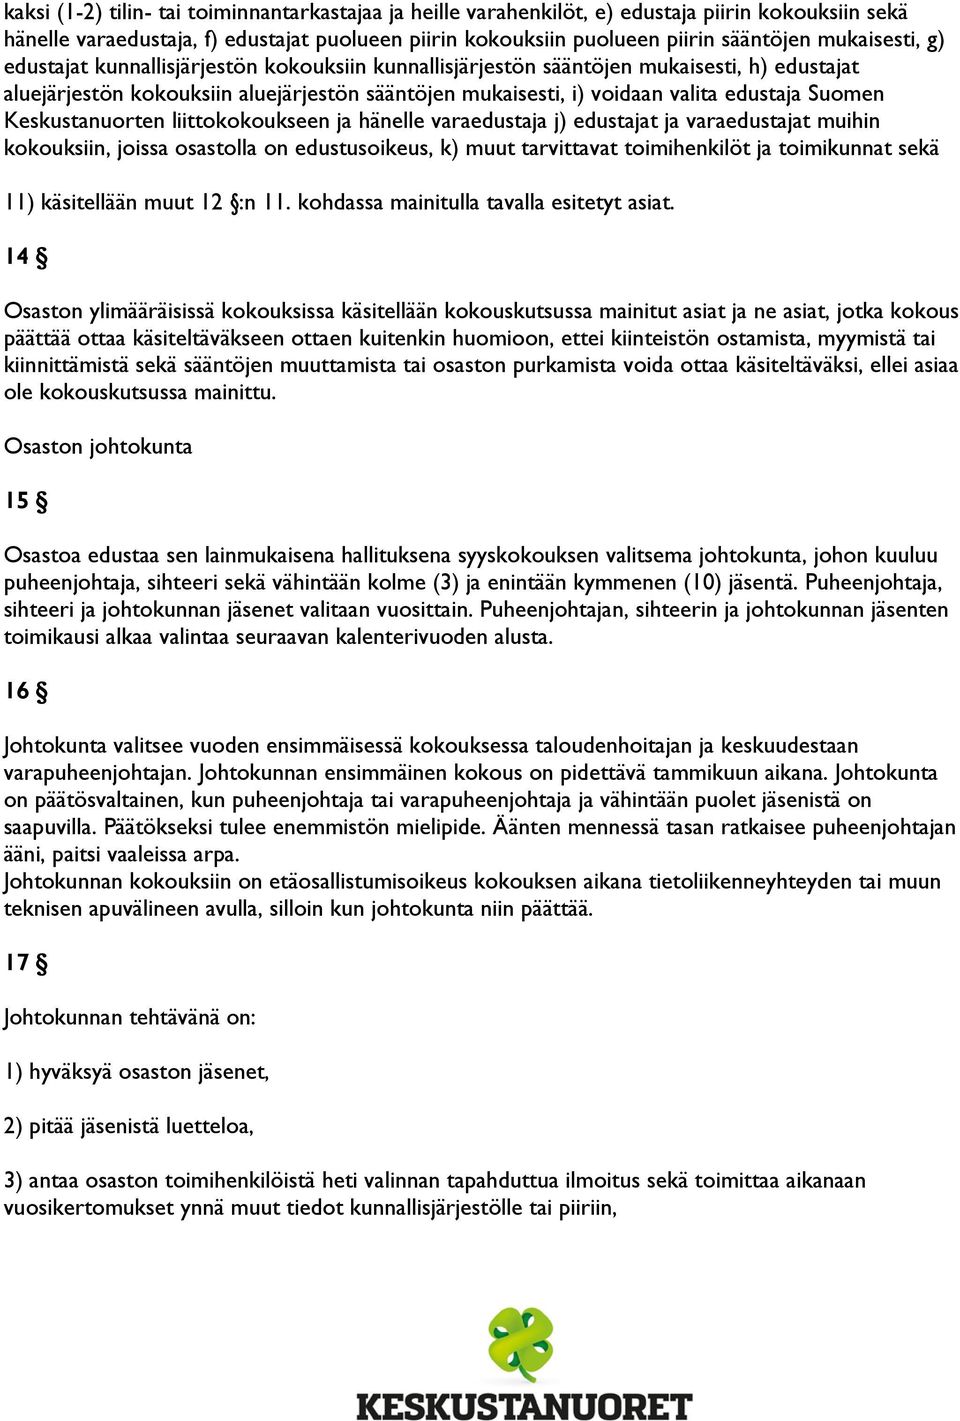 Suomen Keskustanuorten liittokokoukseen ja hänelle varaedustaja j) edustajat ja varaedustajat muihin kokouksiin, joissa osastolla on edustusoikeus, k) muut tarvittavat toimihenkilöt ja toimikunnat